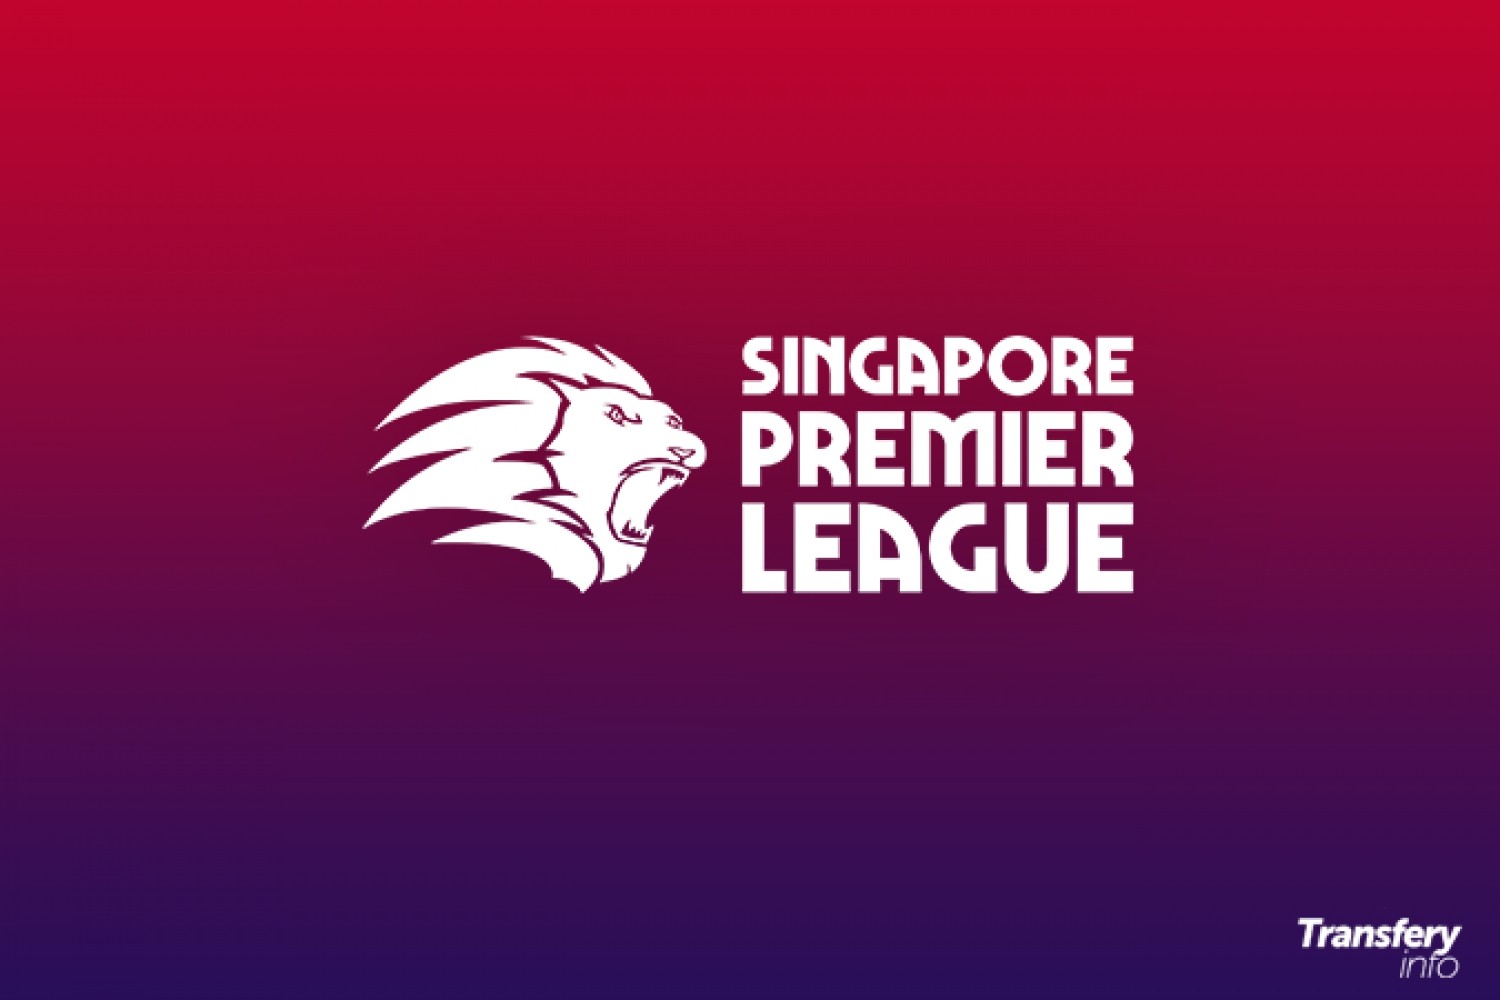 Singapore Premier League wciąż gra, a transmisję można legalnie oglądać w internecie, więc... [WIDEO]